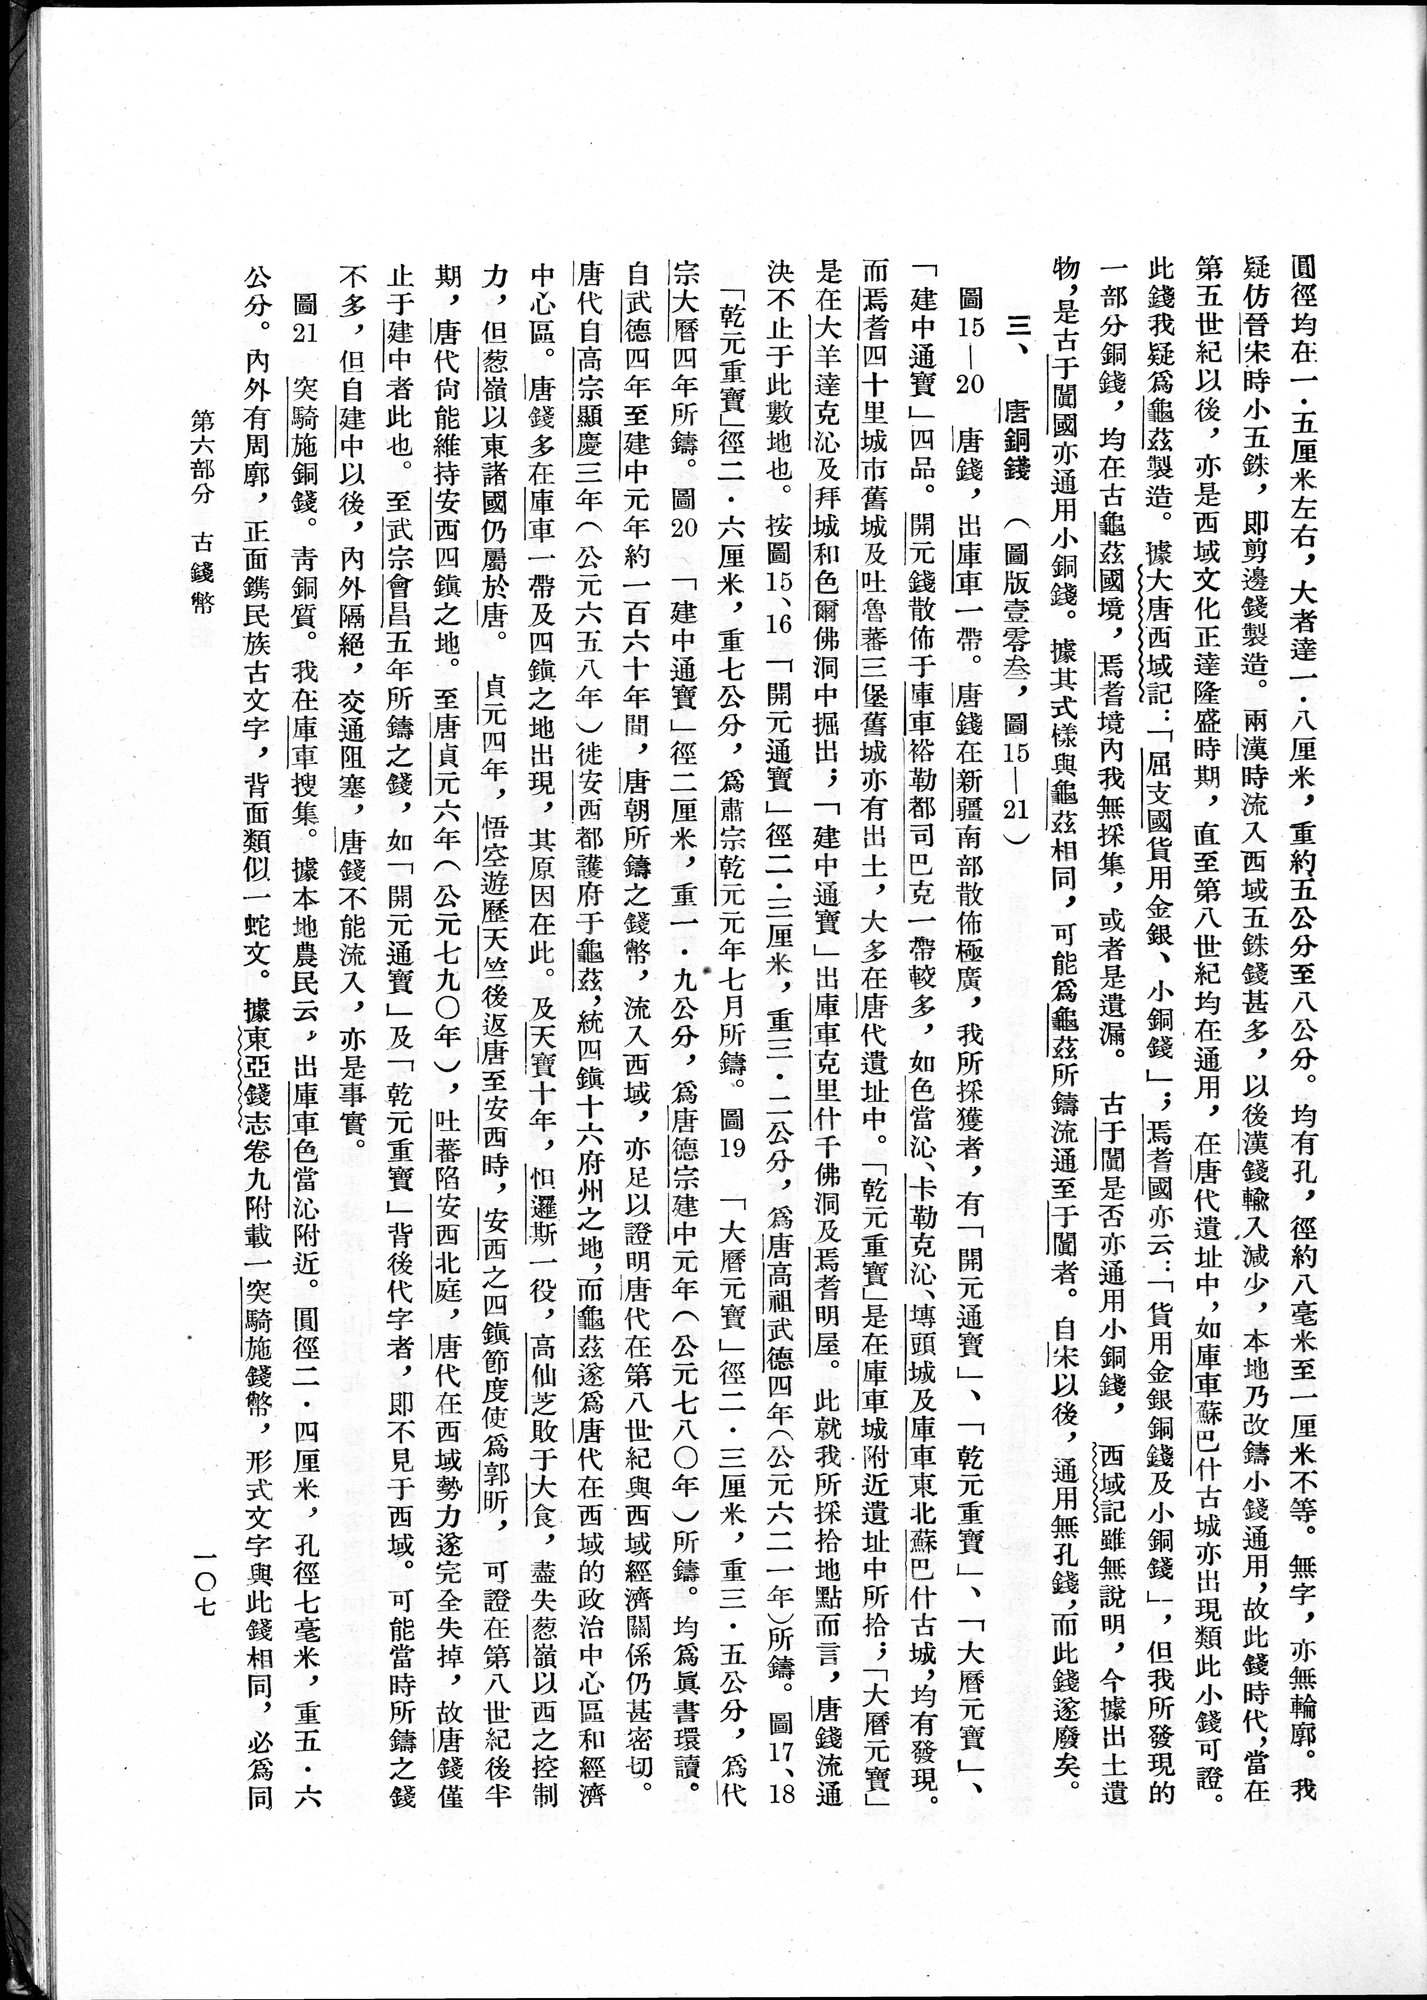 塔里木盆地考古記 : vol.1 / Page 171 (Grayscale High Resolution Image)